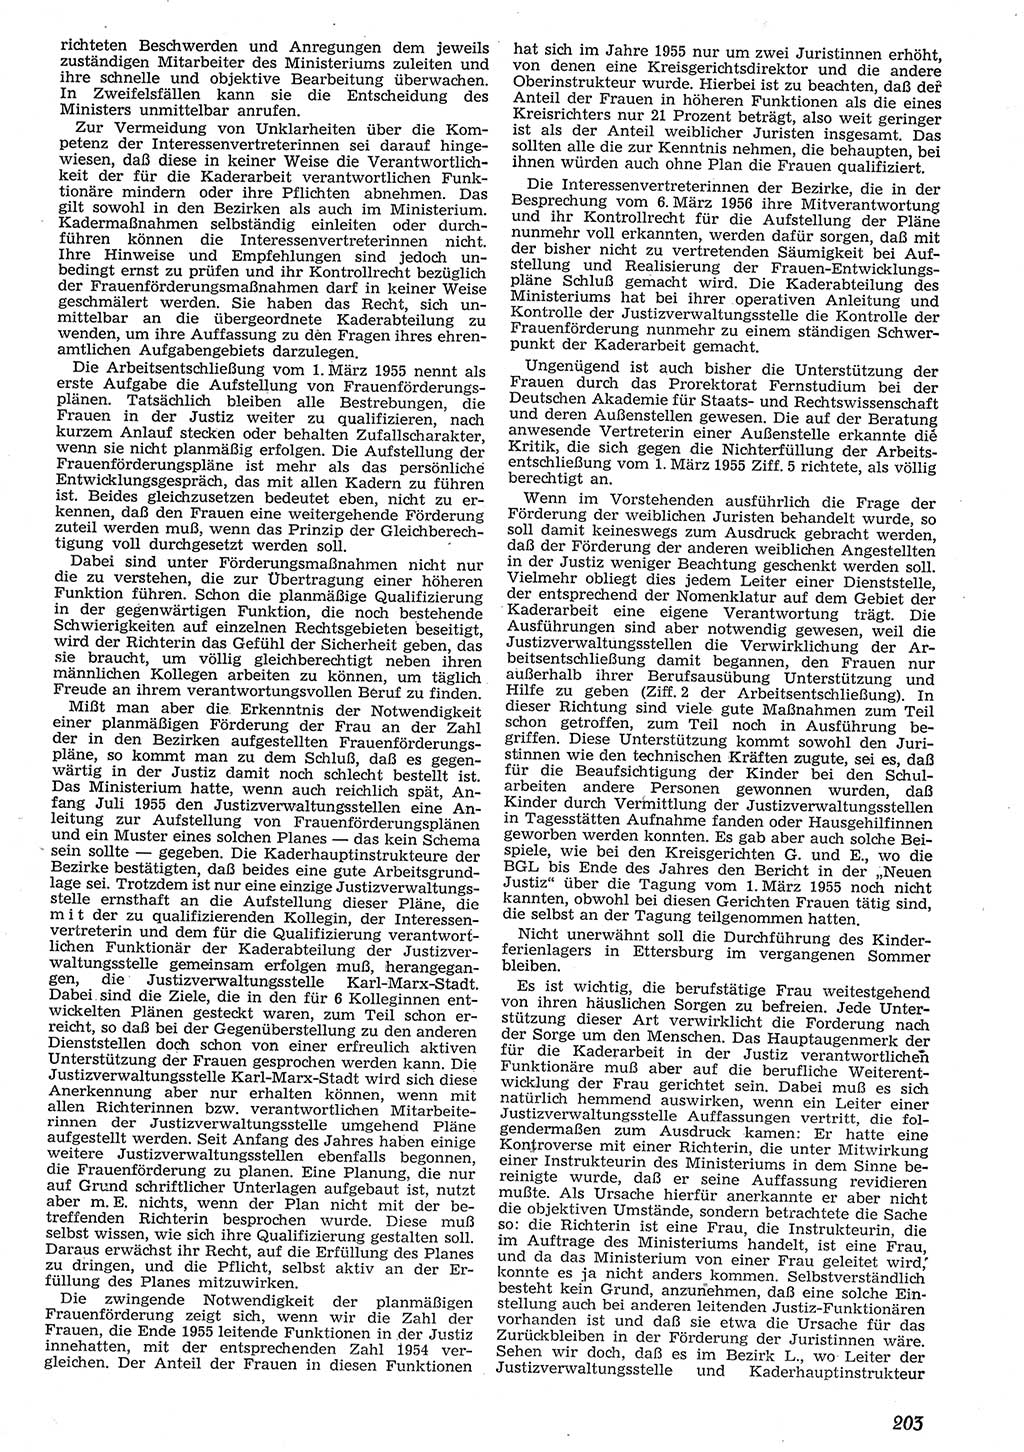 Neue Justiz (NJ), Zeitschrift für Recht und Rechtswissenschaft [Deutsche Demokratische Republik (DDR)], 10. Jahrgang 1956, Seite 203 (NJ DDR 1956, S. 203)